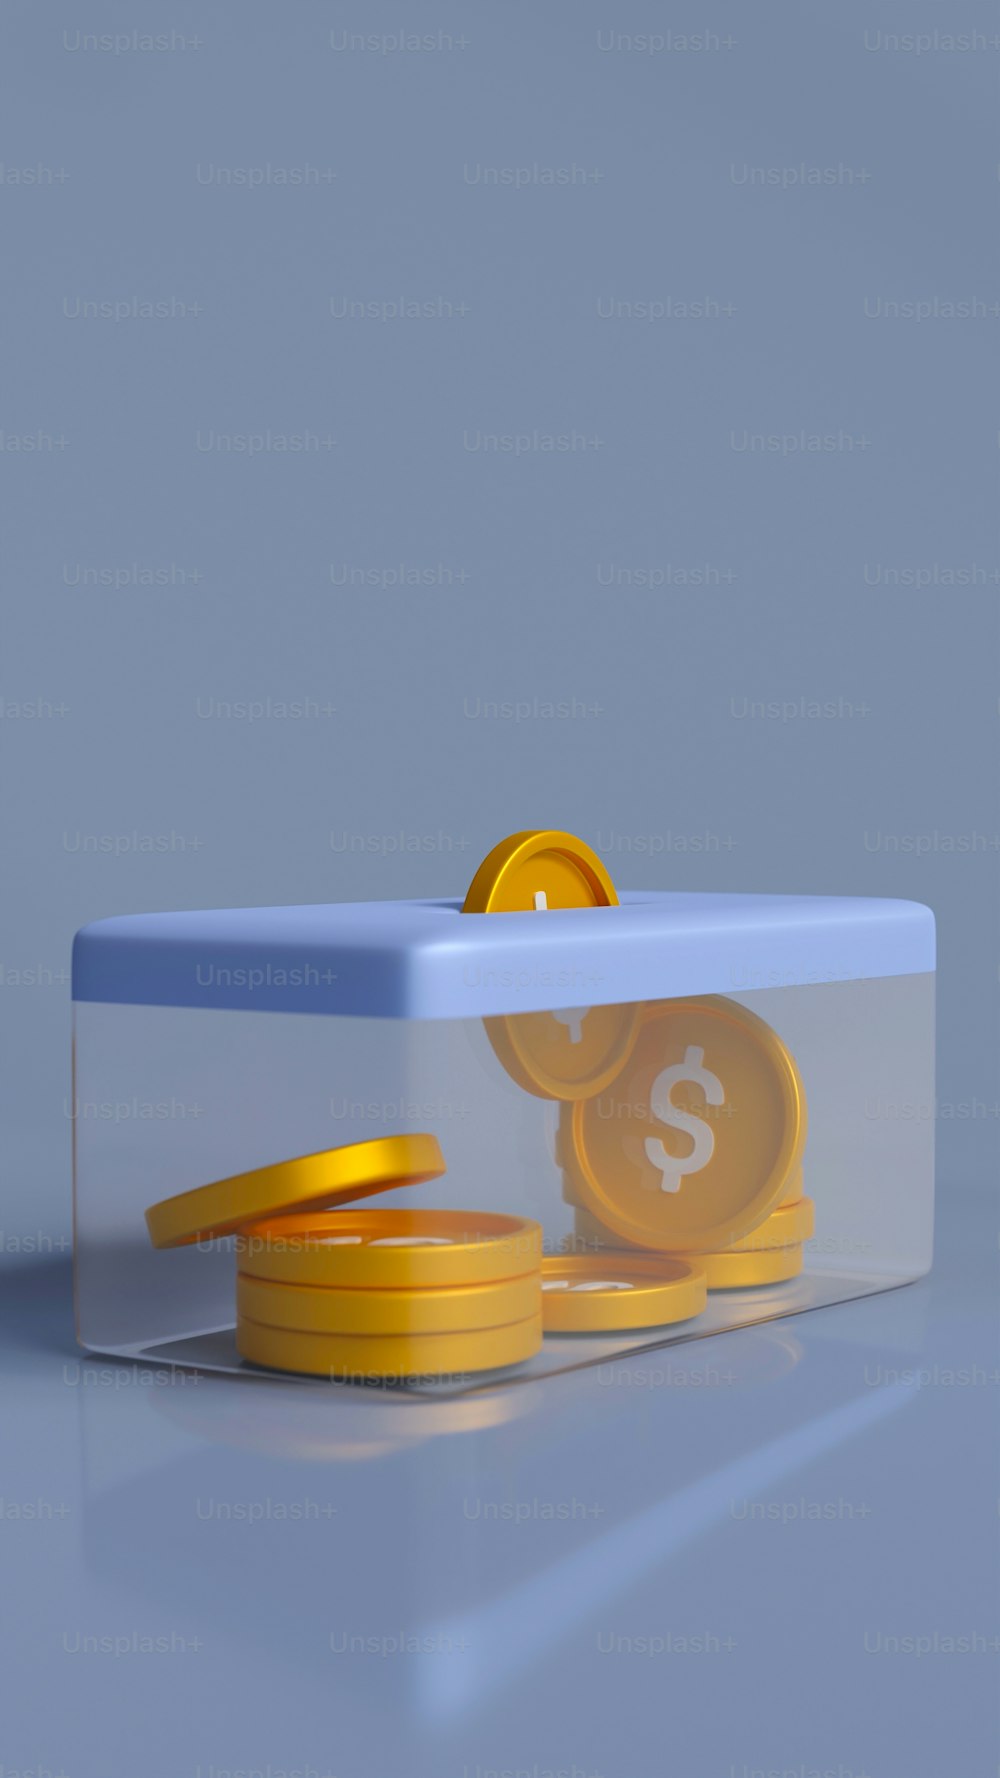 une boîte bleue avec une pièce d’un dollar à l’intérieur